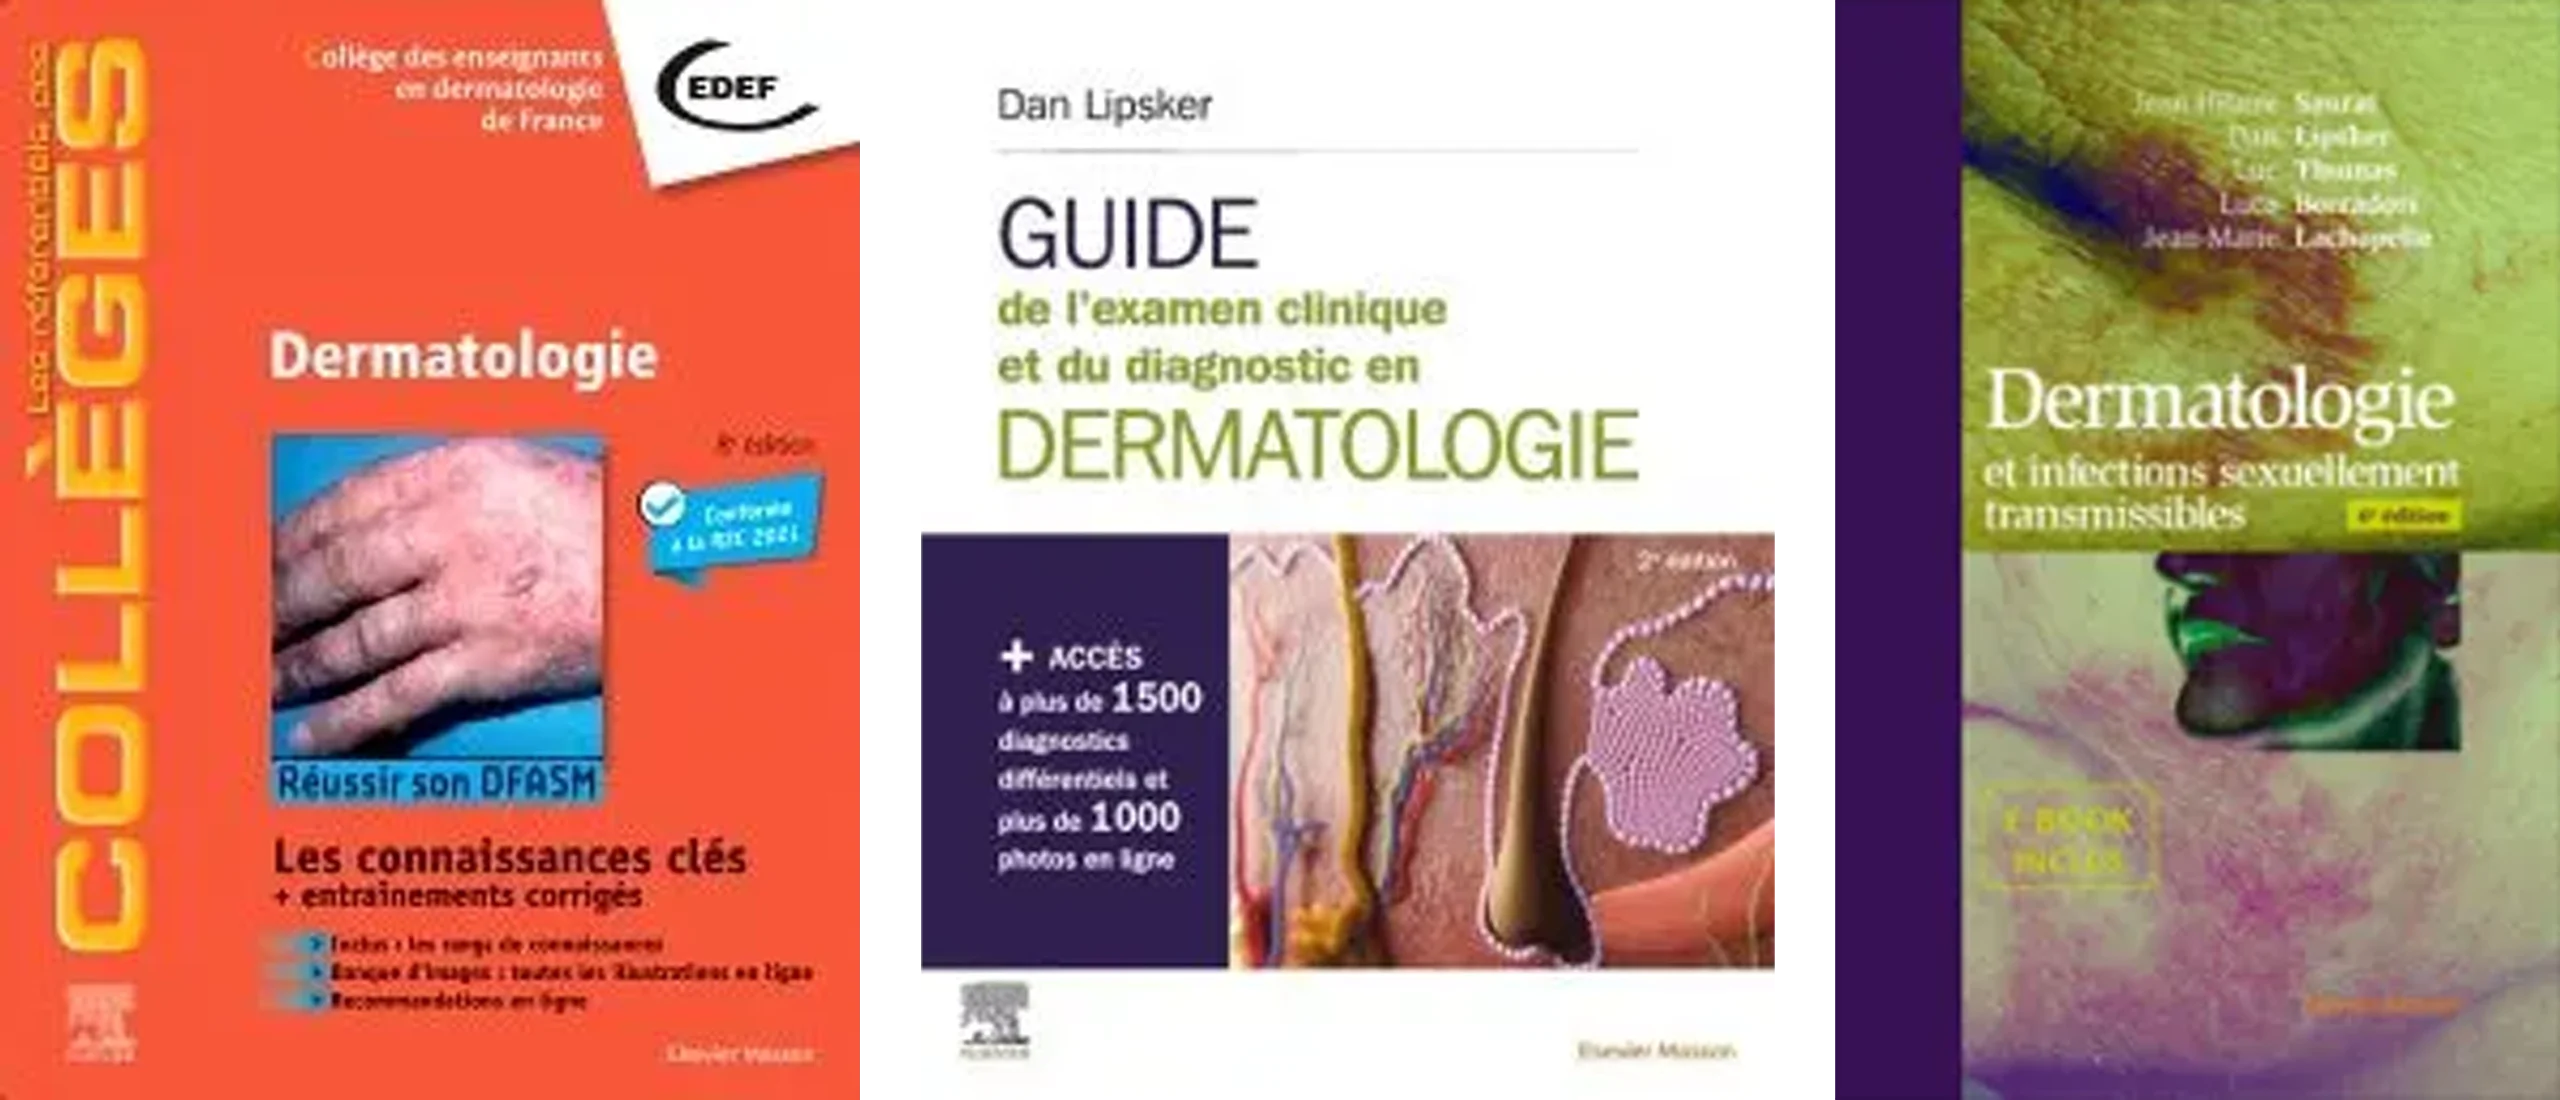 Dermatologie, Guide de l-examen clinique et du diagnostic en dermatologie, & Dermatologie et infections sexuellement transmissibles